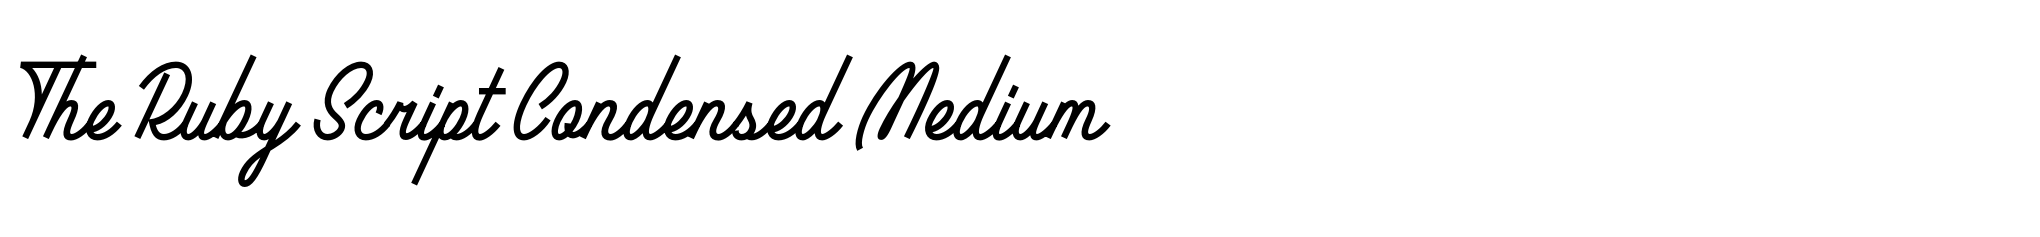 The Ruby Script Condensed Medium image